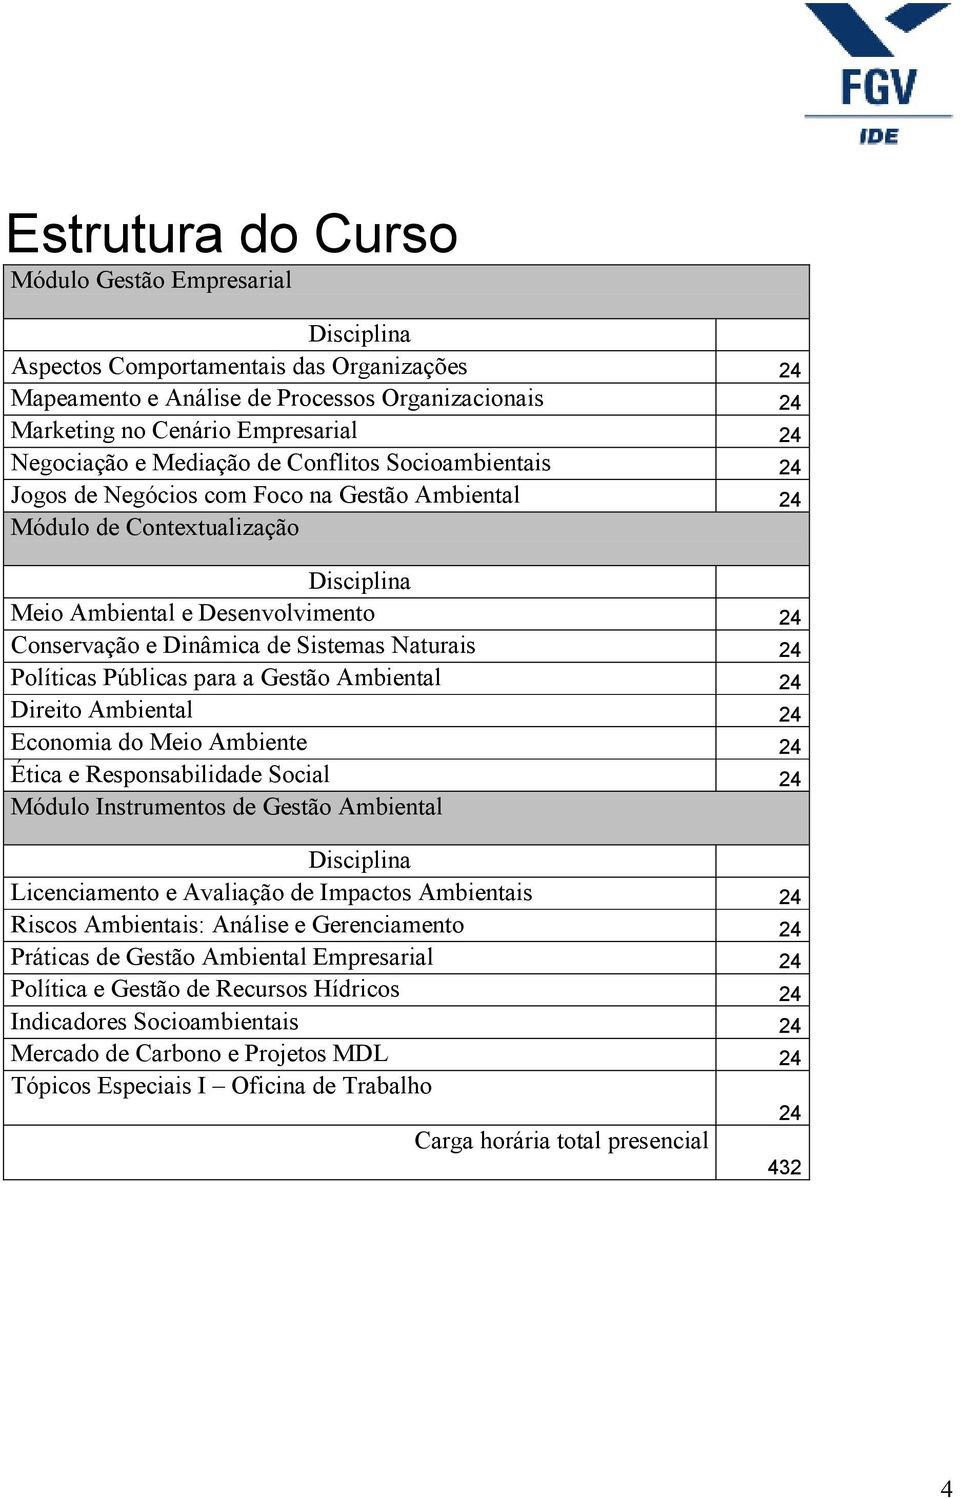 Dinâmica de Sistemas Naturais 24 Políticas Públicas para a Gestão Ambiental 24 Direito Ambiental 24 Economia do Meio Ambiente 24 Ética e Responsabilidade Social 24 Módulo Instrumentos de Gestão